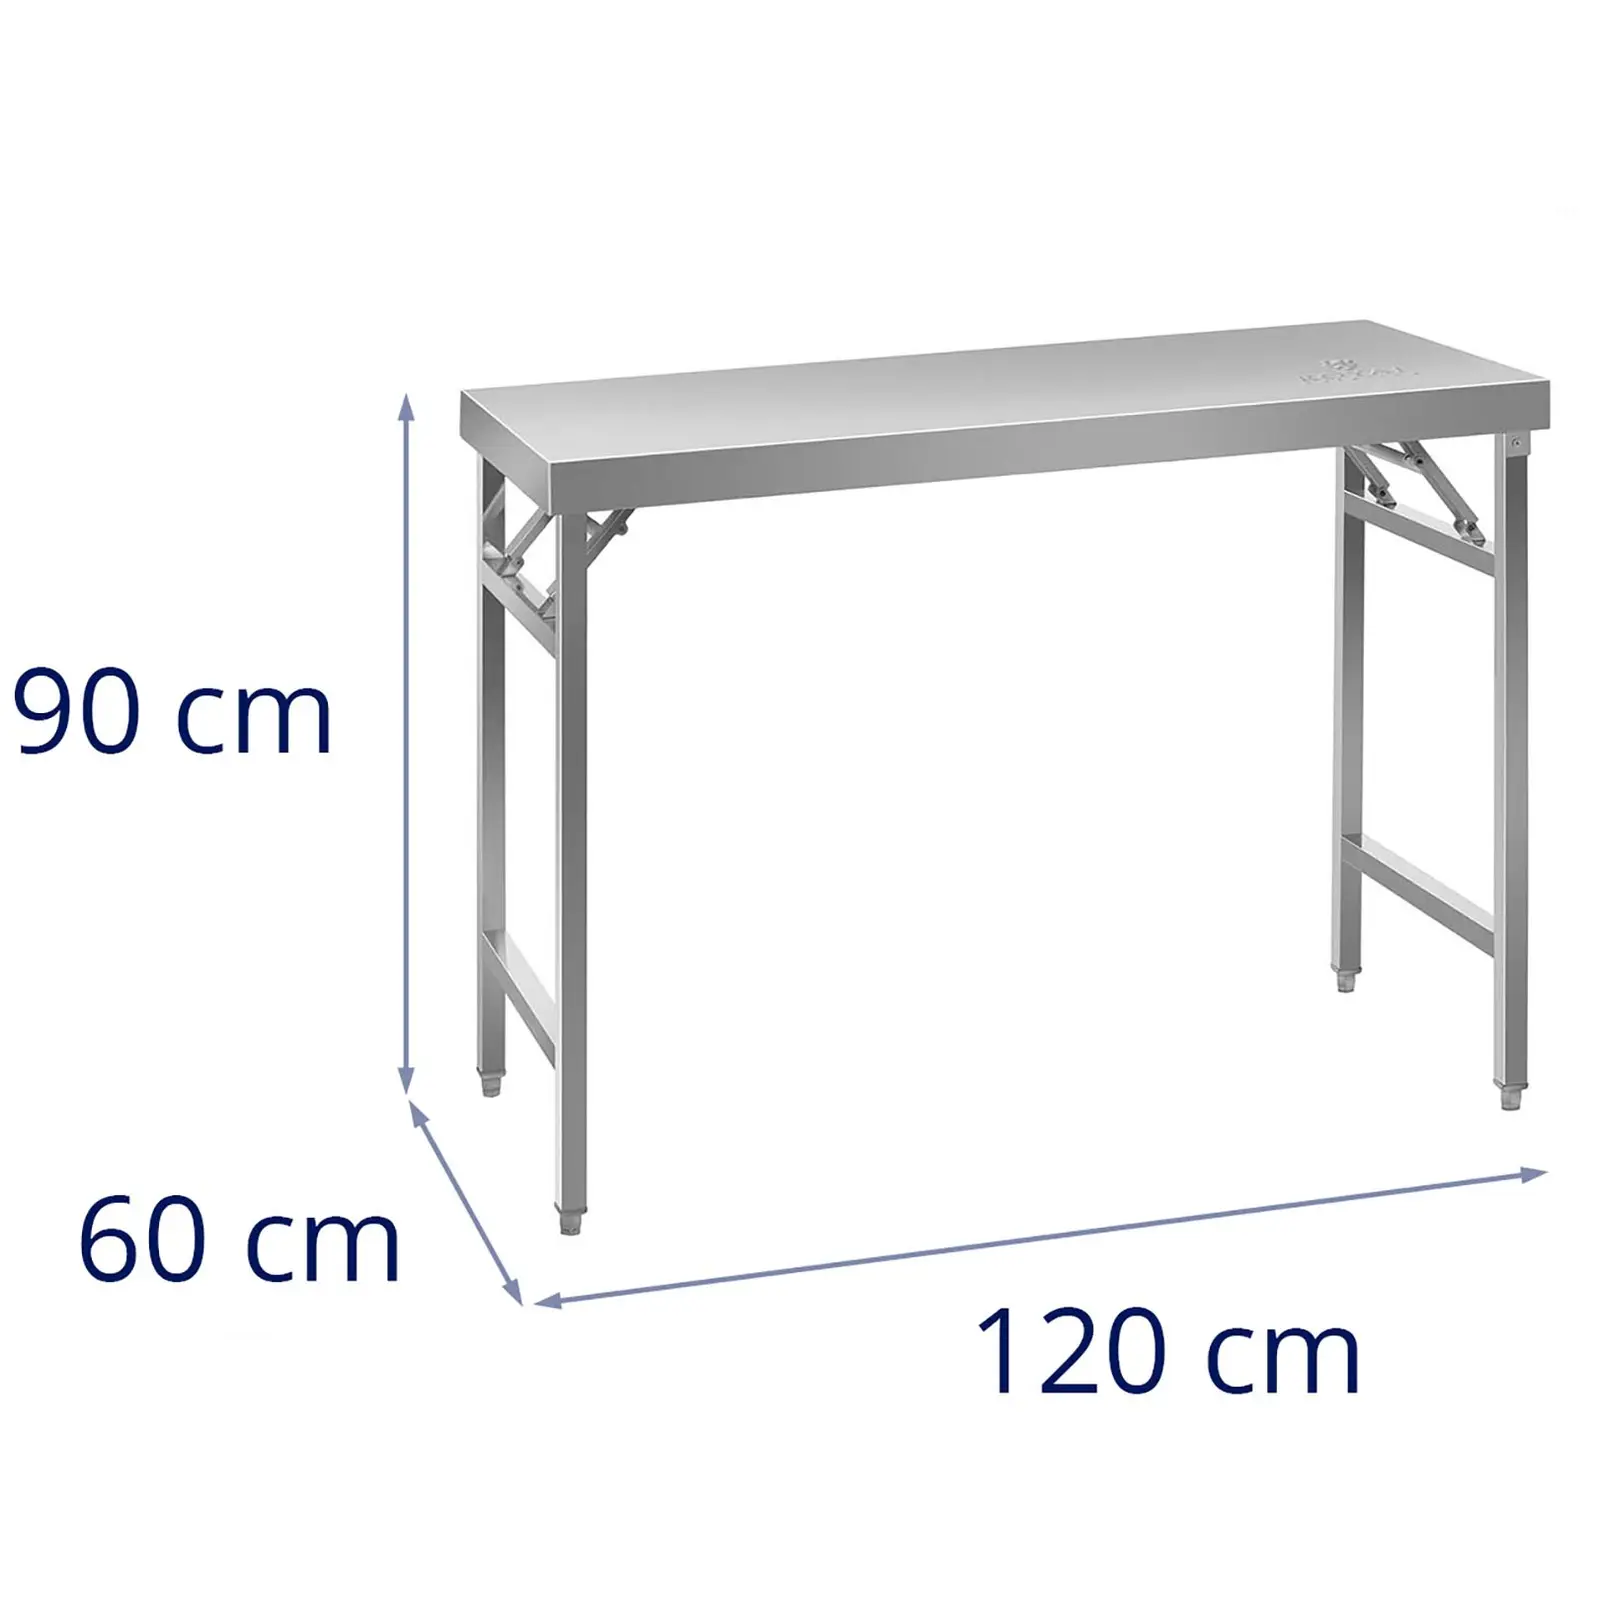 Table de travail pliable - Acier inoxydable - 120 x 60 cm